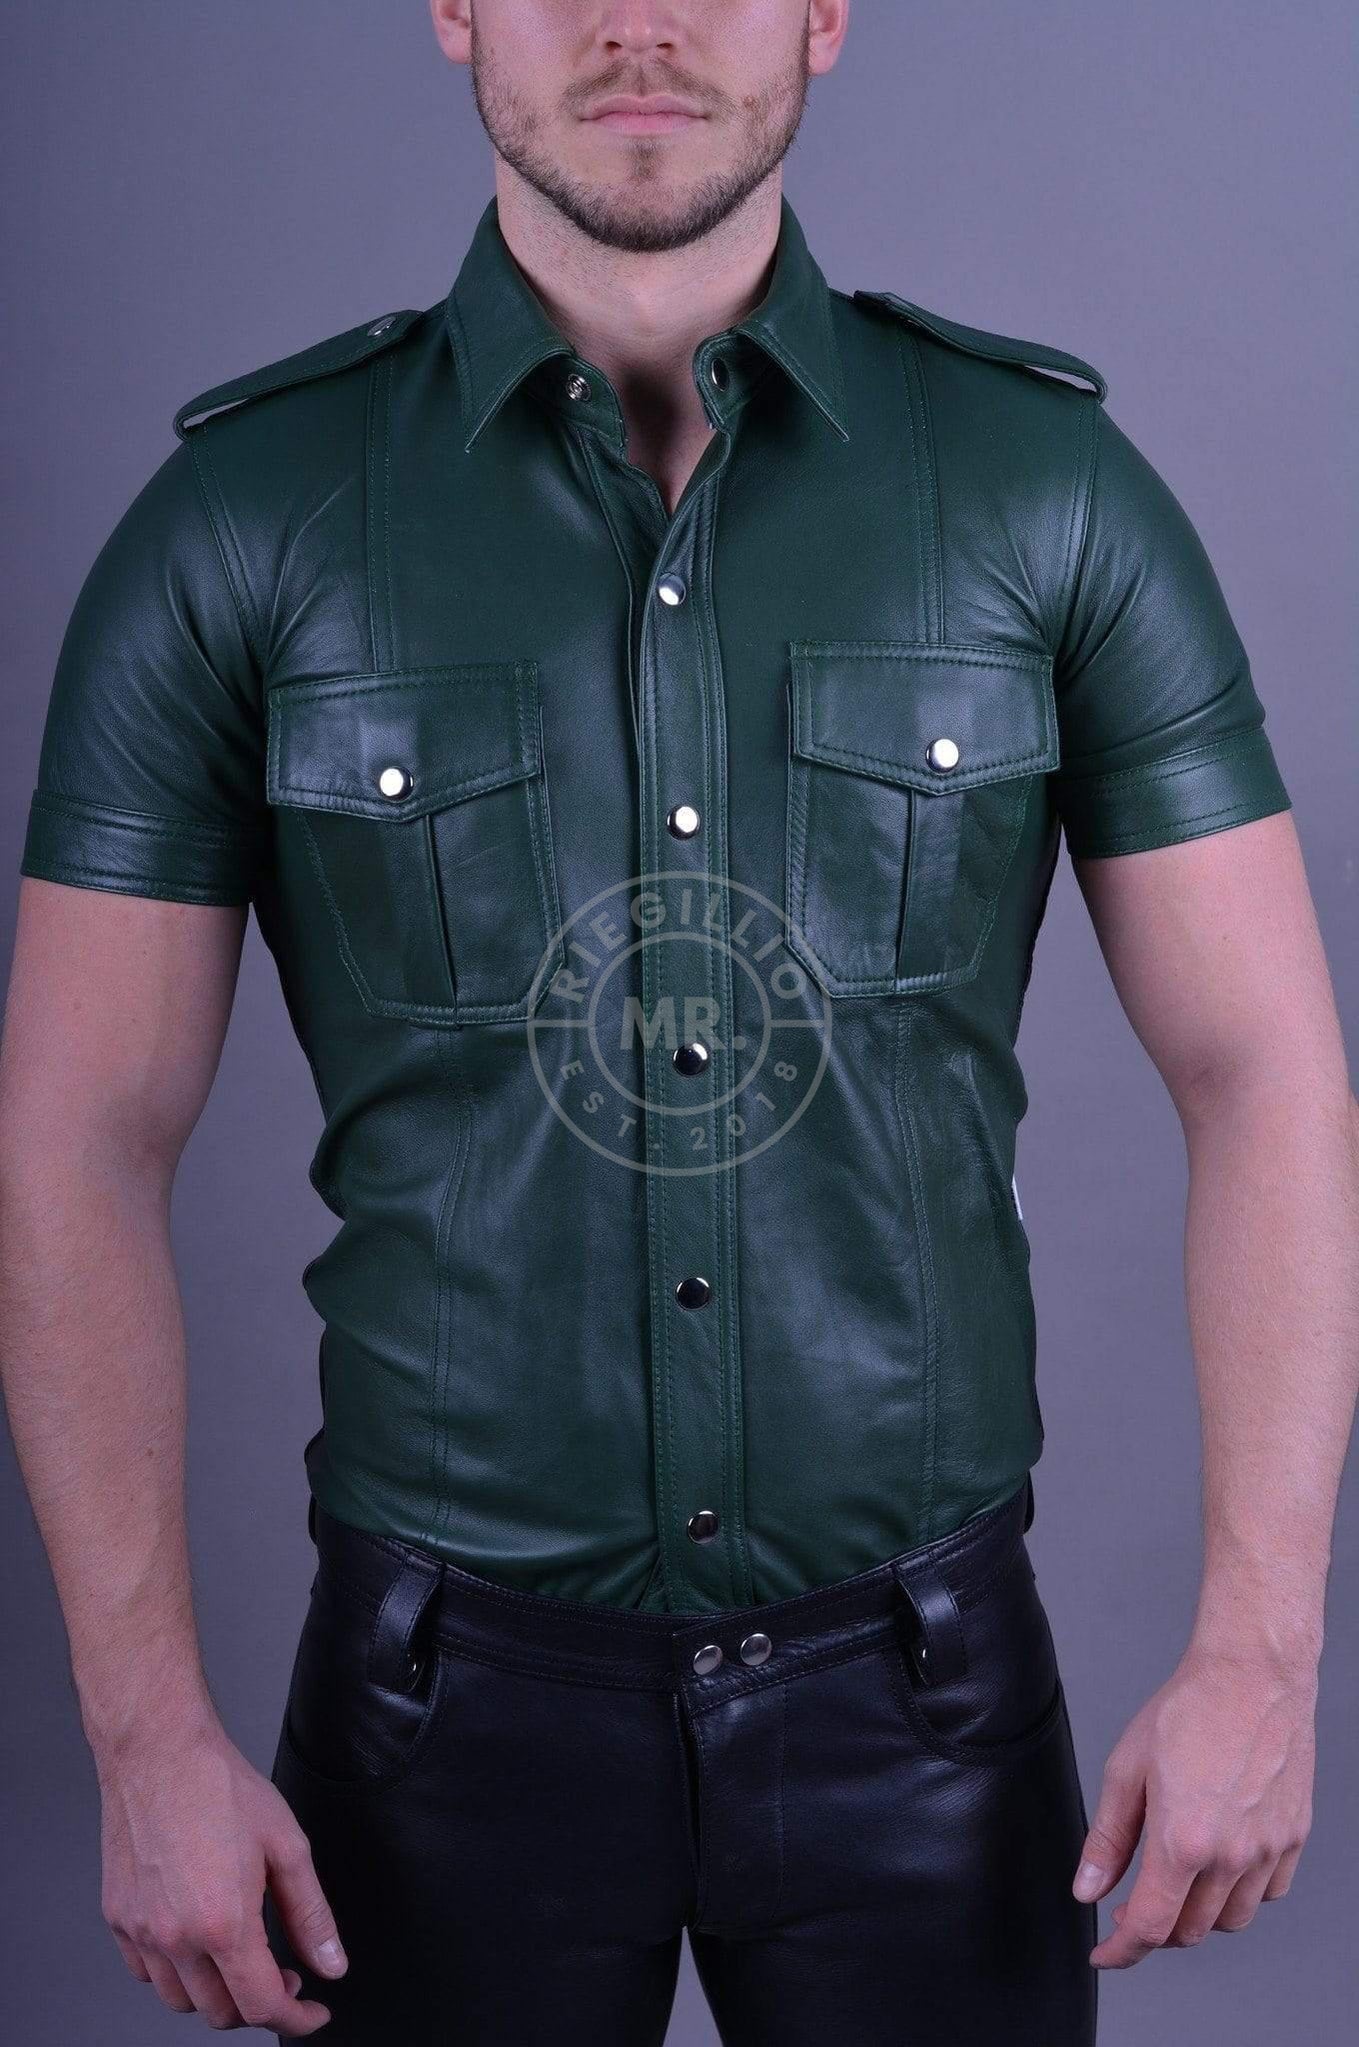 Dark Green Leather Shirt at MR. Riegillio